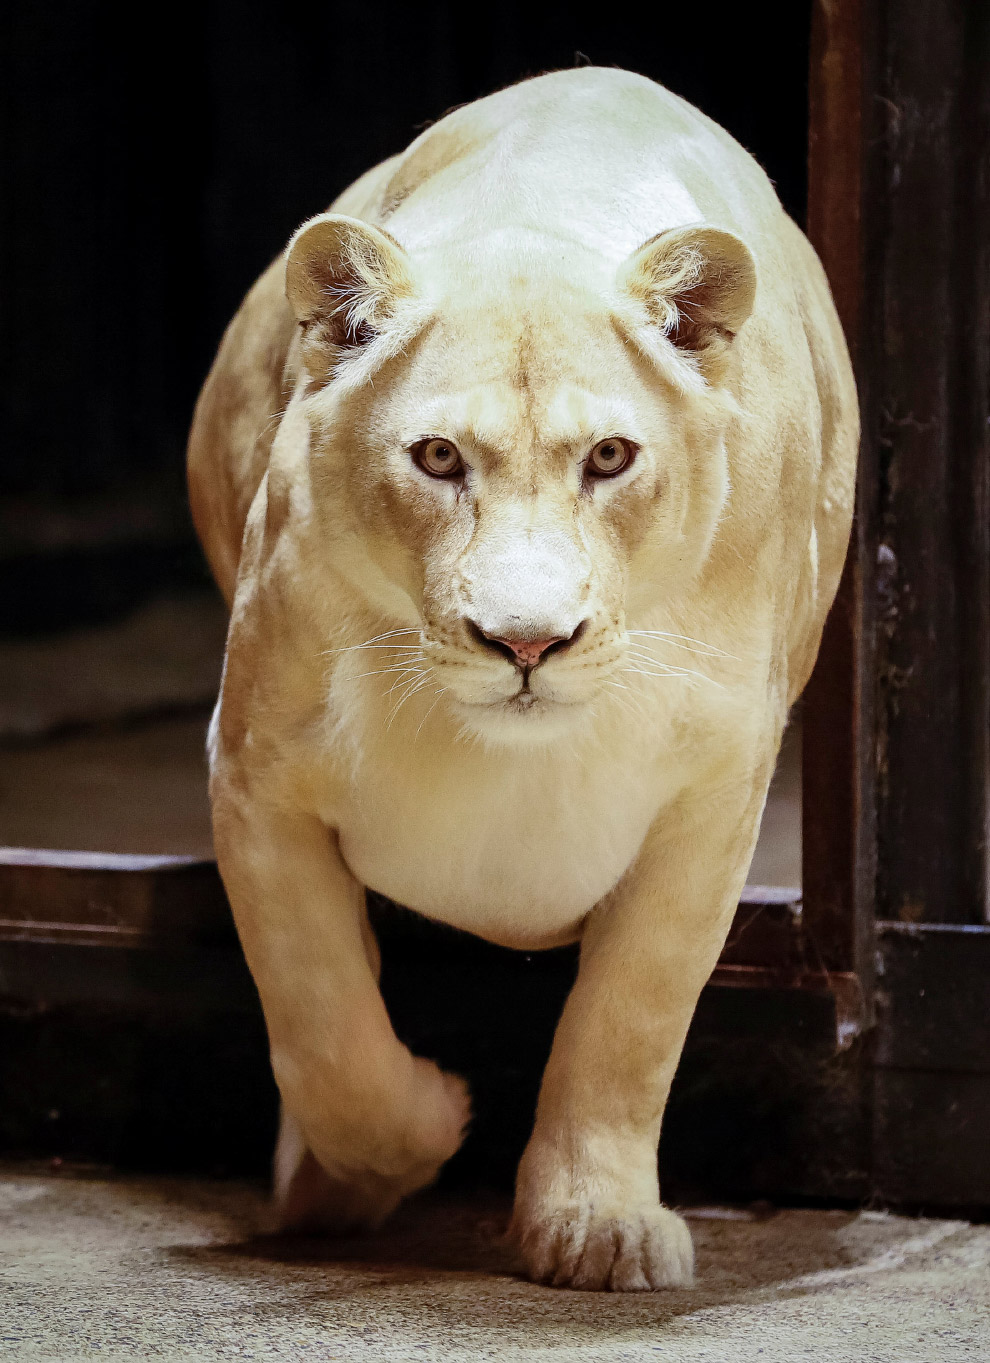 Агата, 6-летняя африканская львица в зоопарке Роев Ручей в Красноярске.